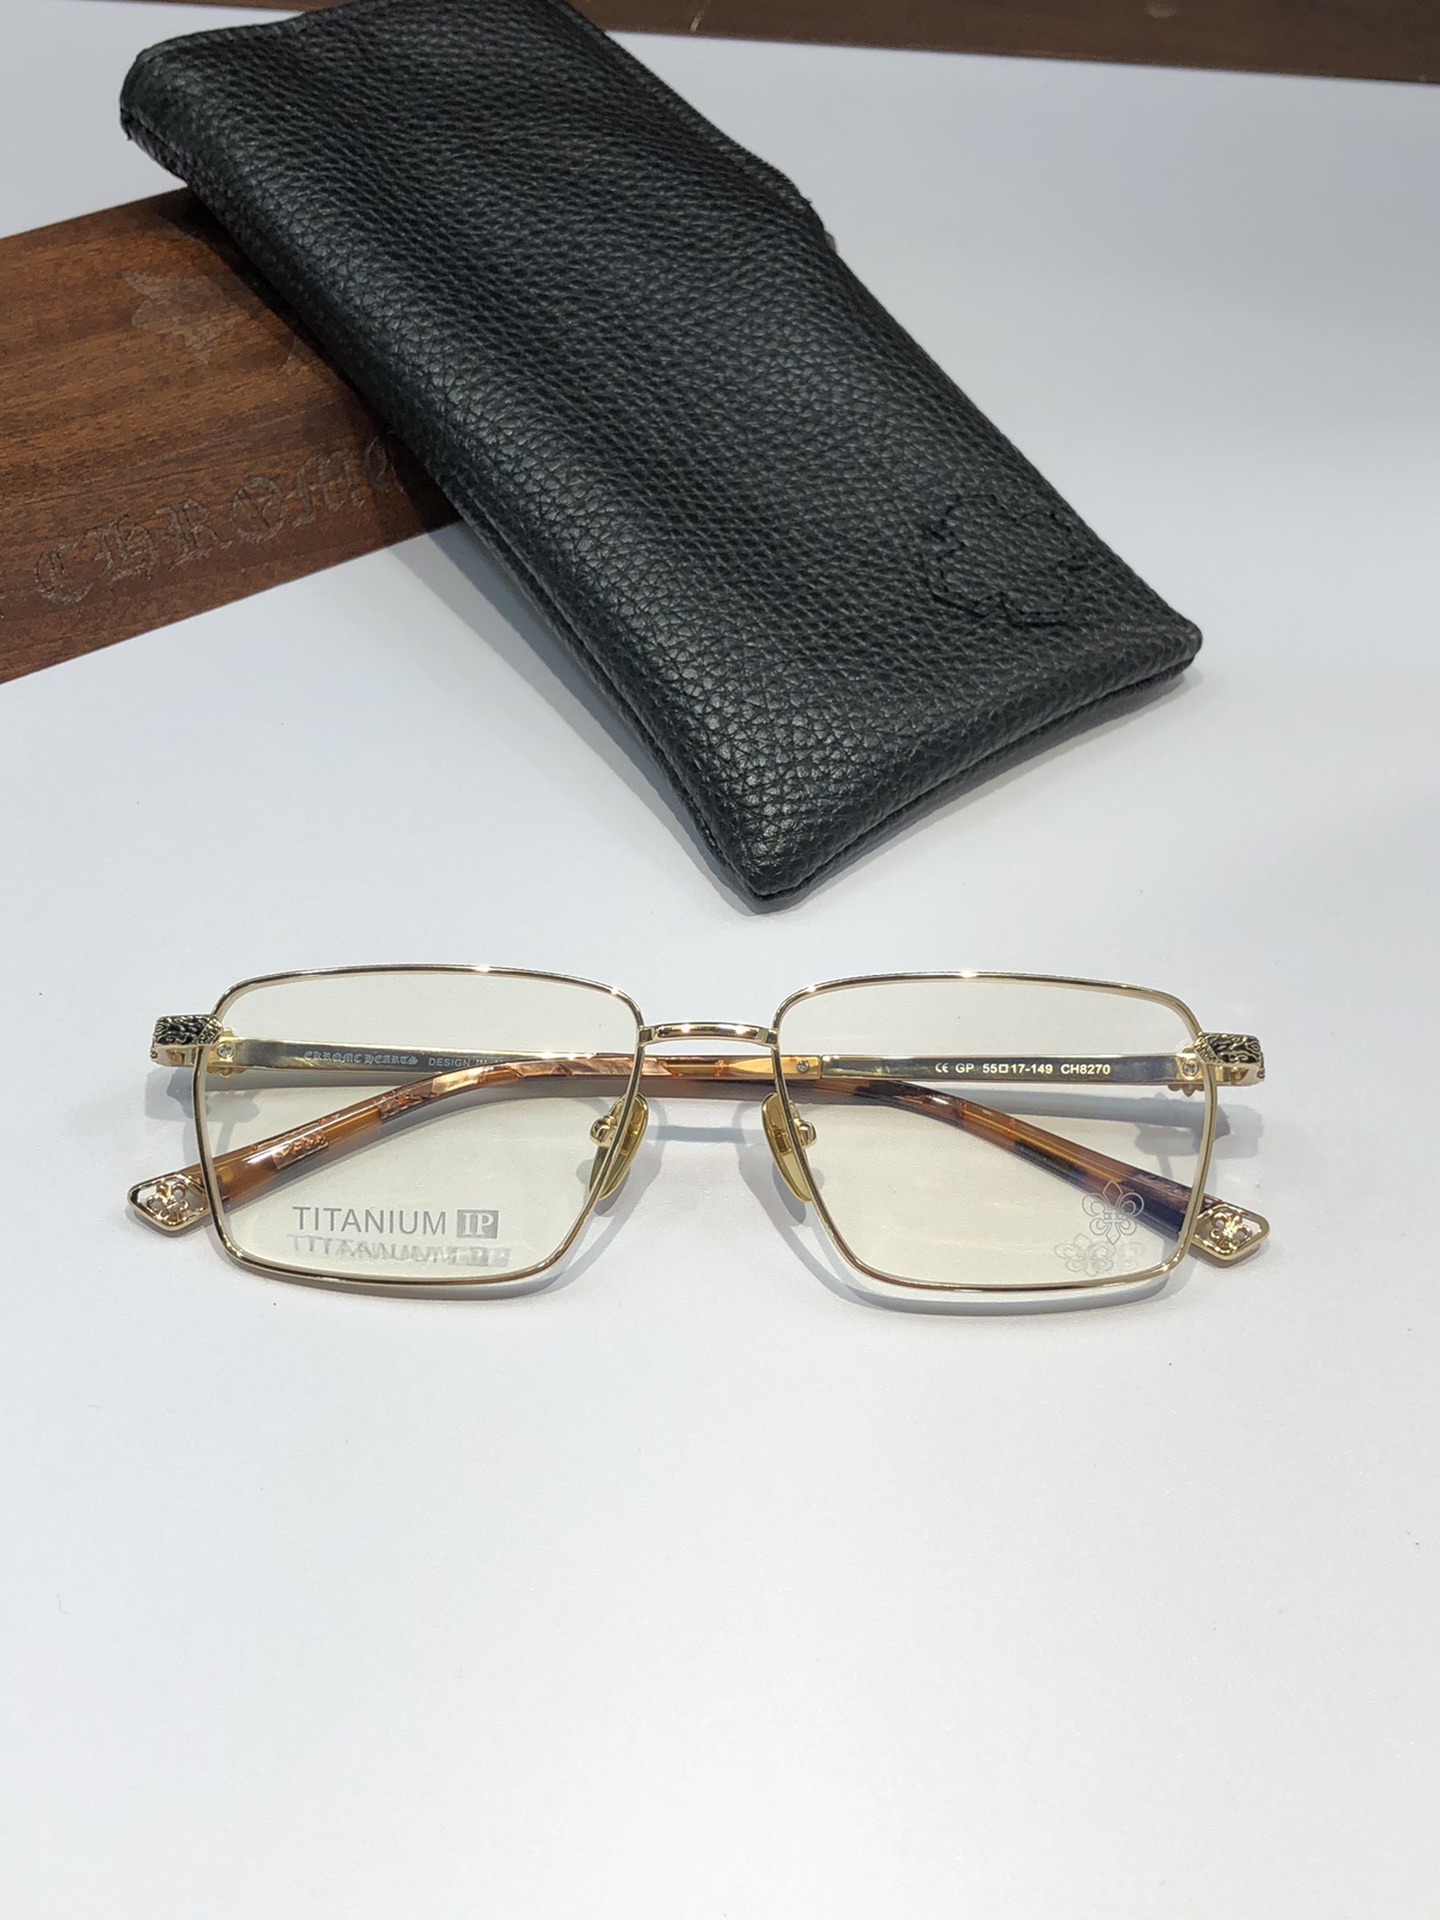 高档纯钛眼镜️CHROMEHEART方正百搭款厚边设计质感满分CH8270SIZE:55-17-149